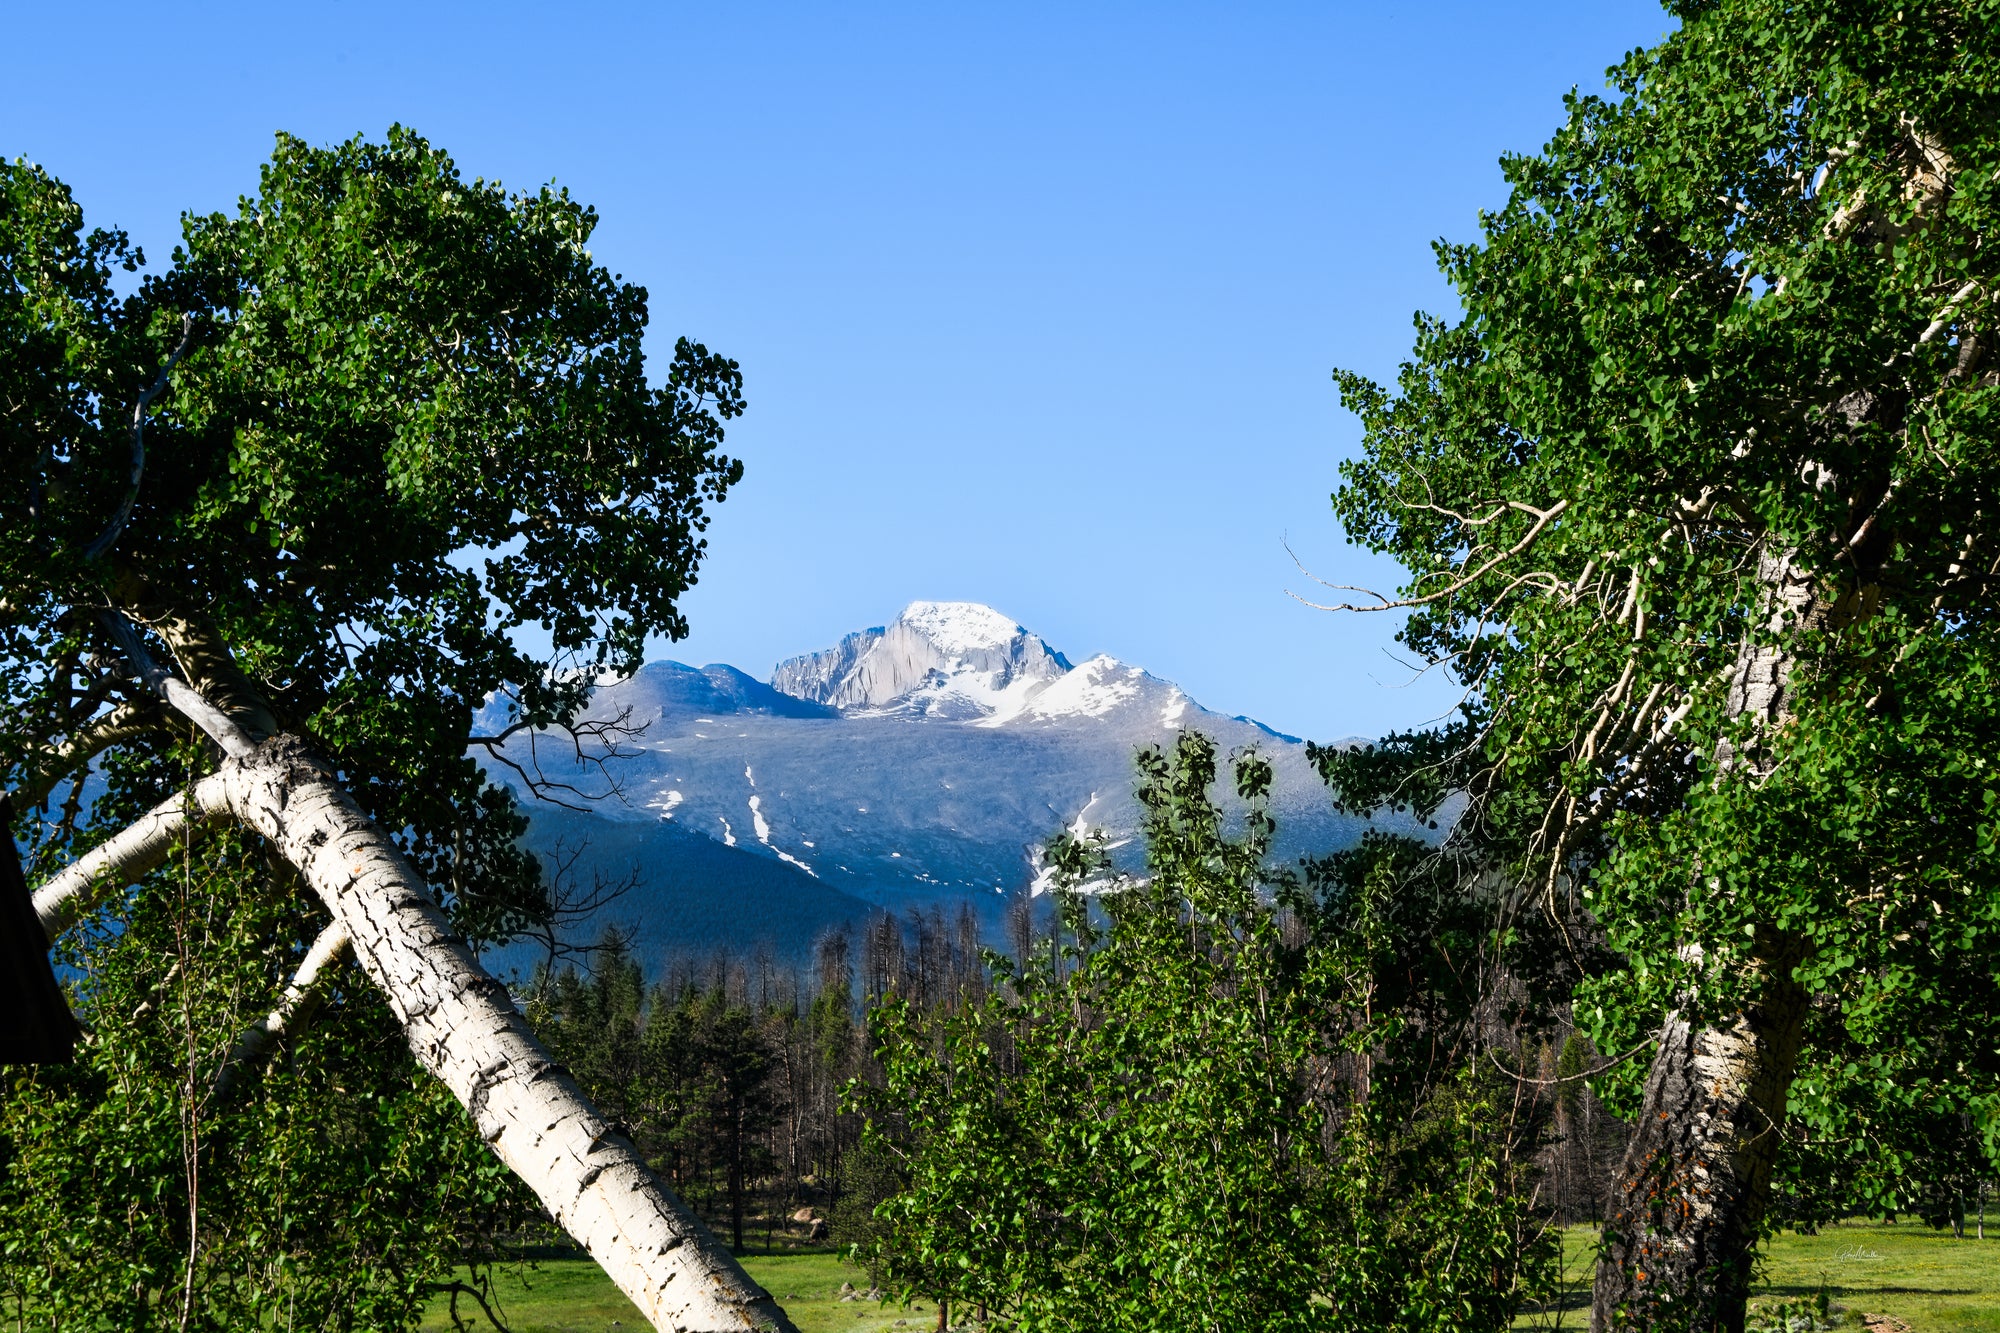 Long's Peak View Framed by Aspen Trees.